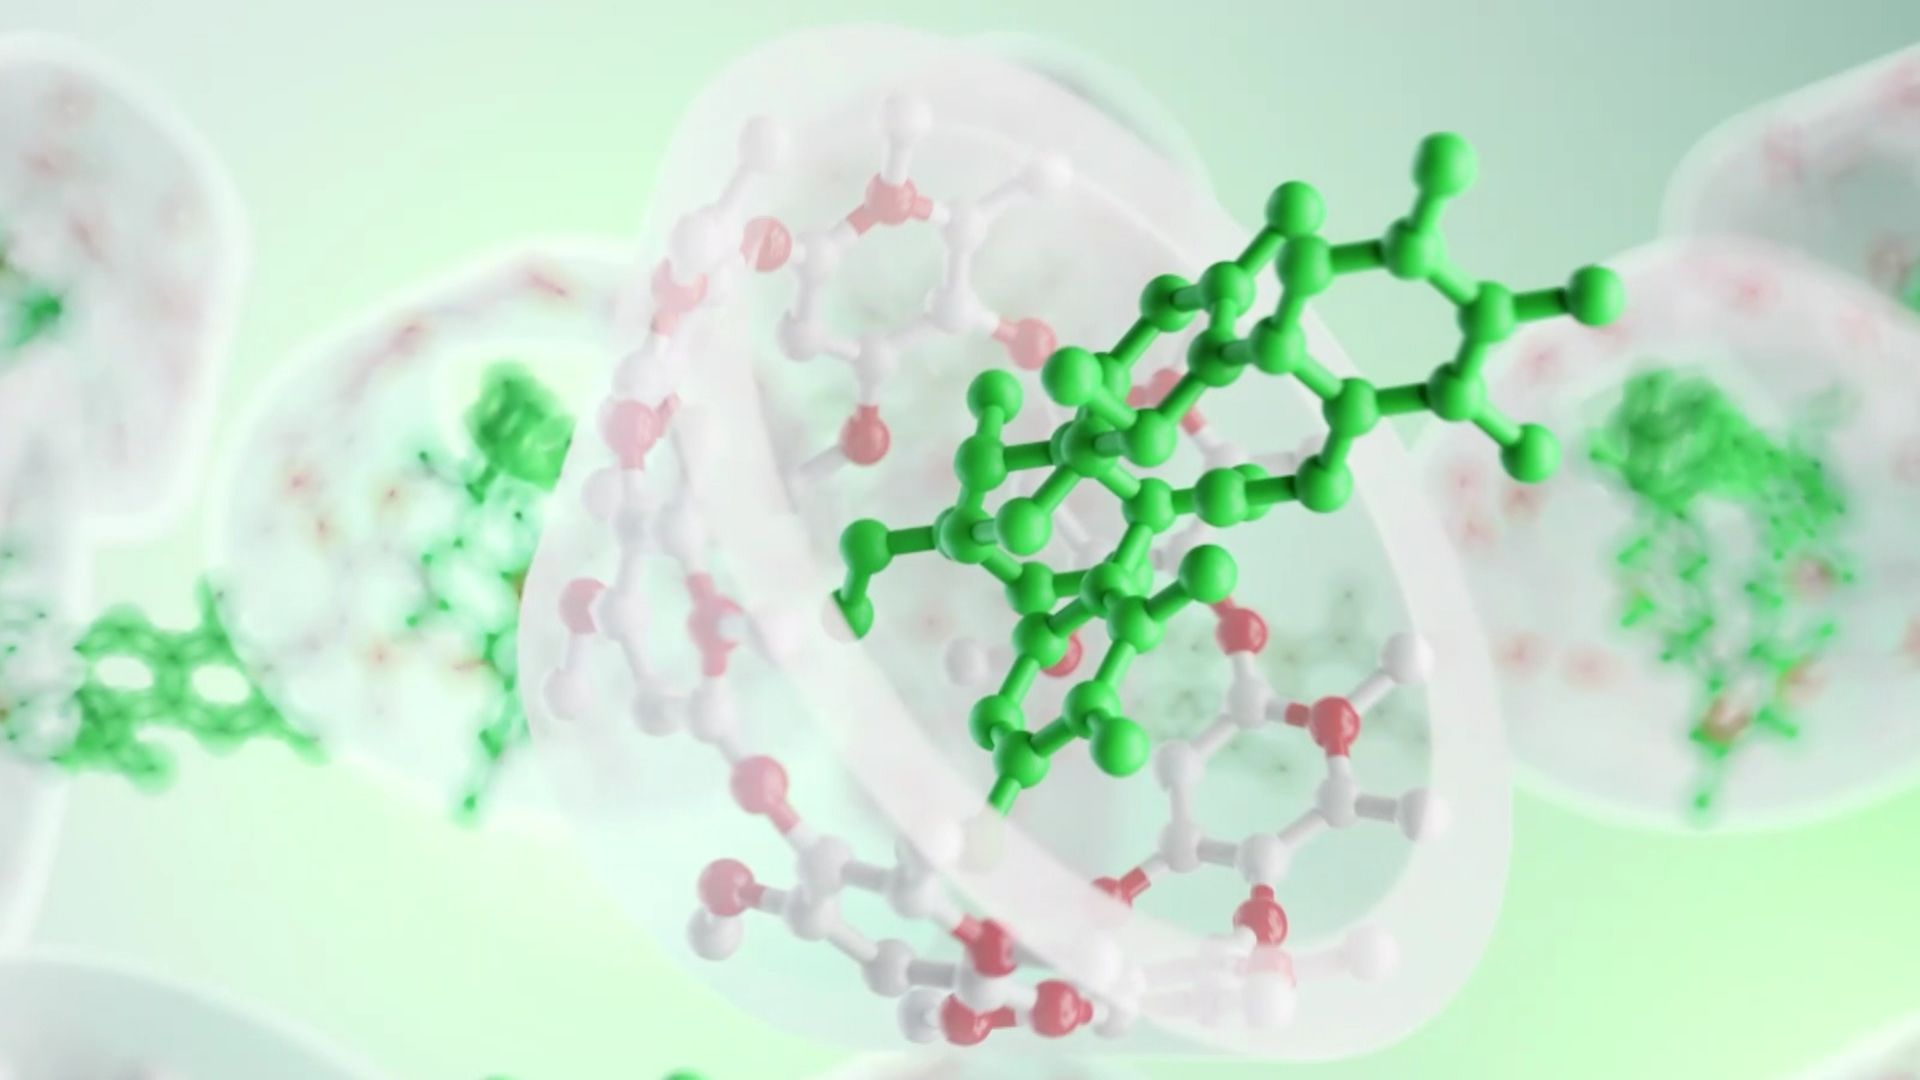 Le corticoïde (en vert), la molécule anti-inflammatoire, est encapsulé dans des sucres complexes, les cyclo dextrines (en rouge et blanc) tel un petit vaisseau pour aller au fond du poumon.